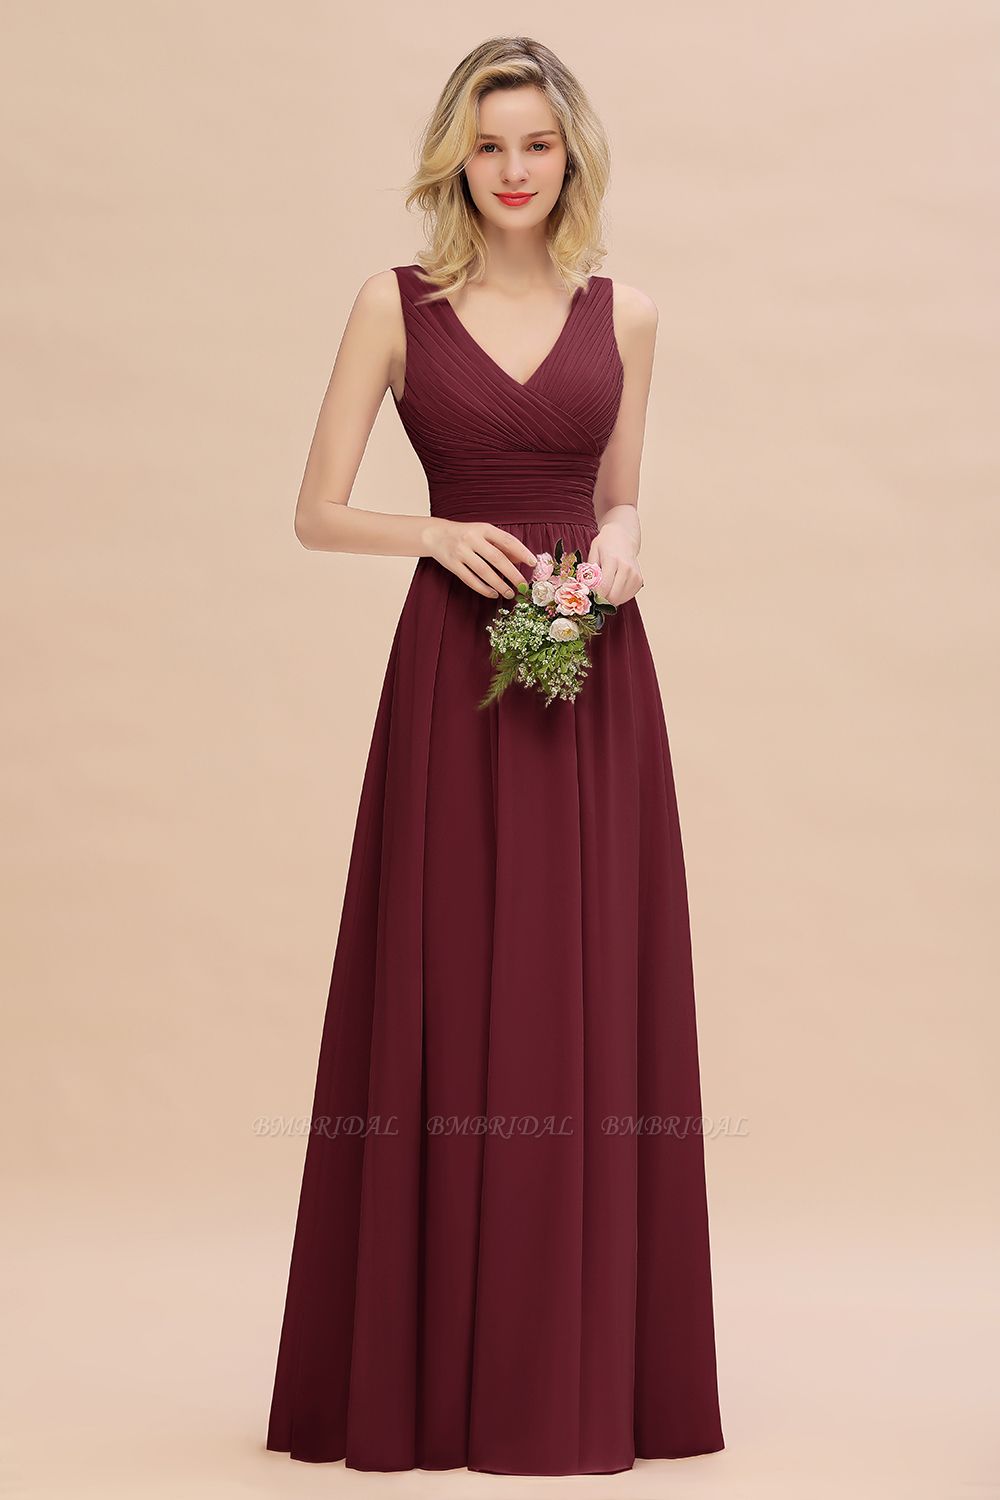 BMbridal Elegant V-Neck Dusty Rose Chiffon Bridesmaid Dress with Ruffle